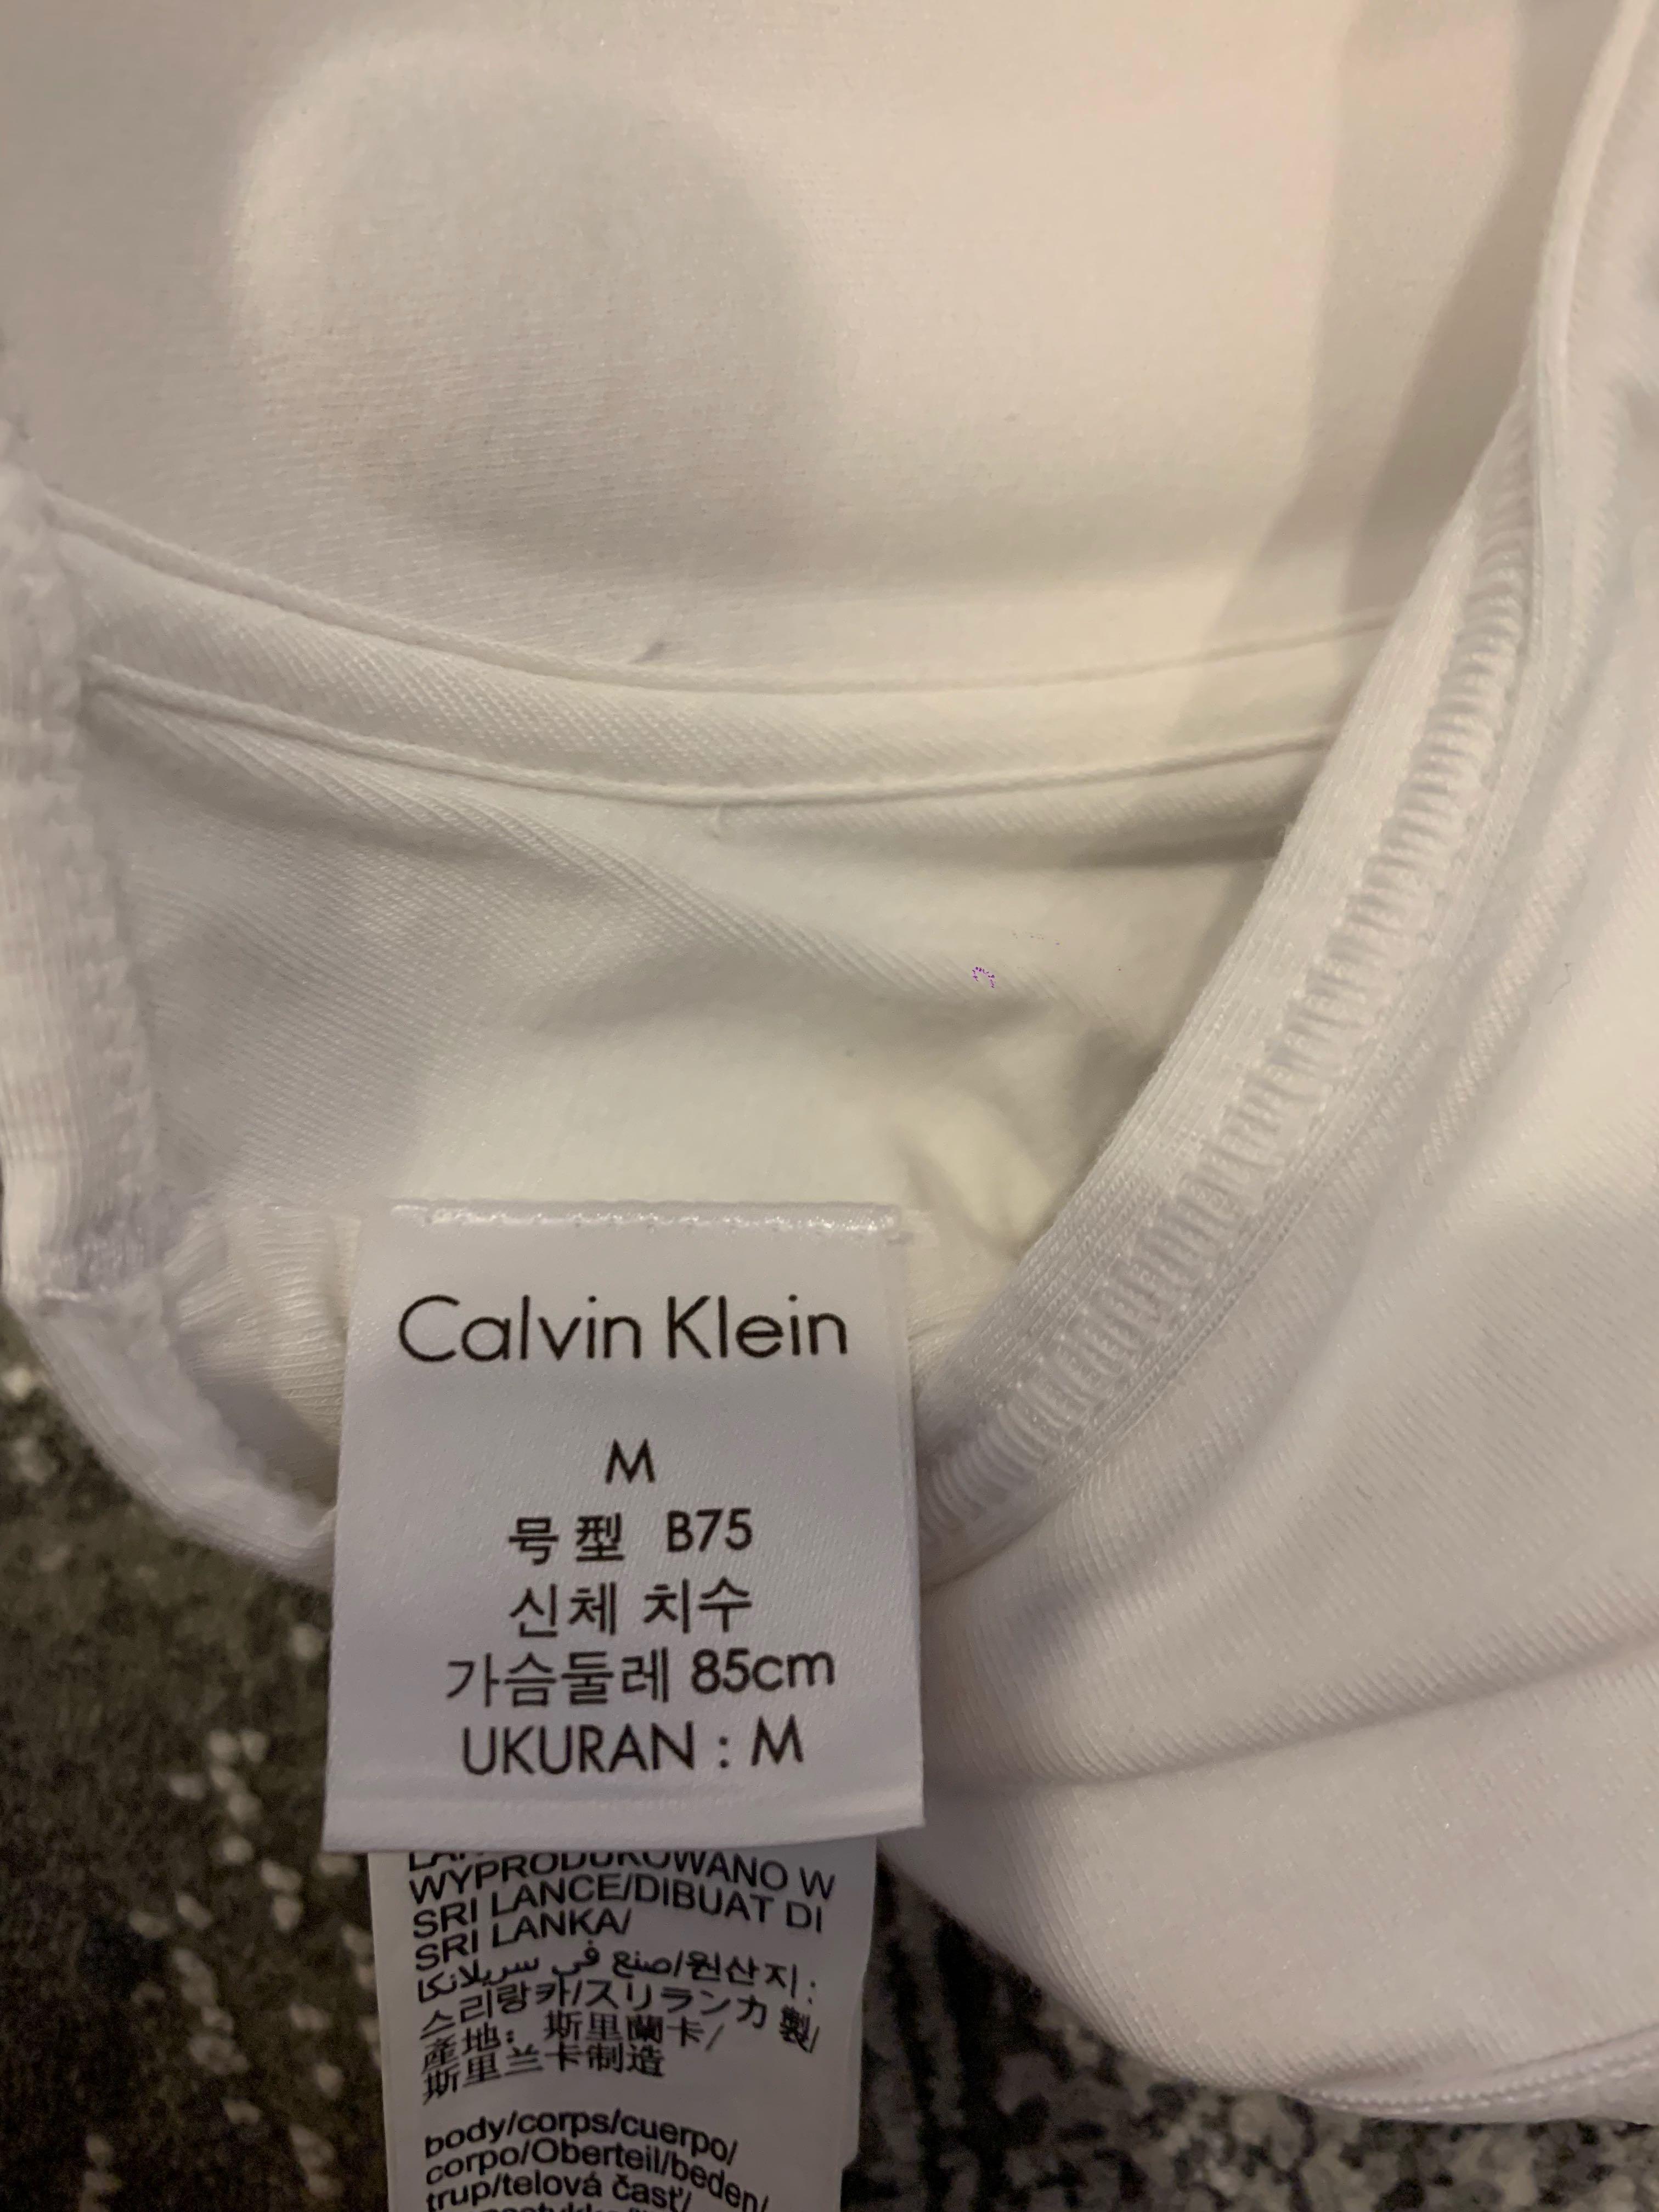 Calvin Klein white sports bra